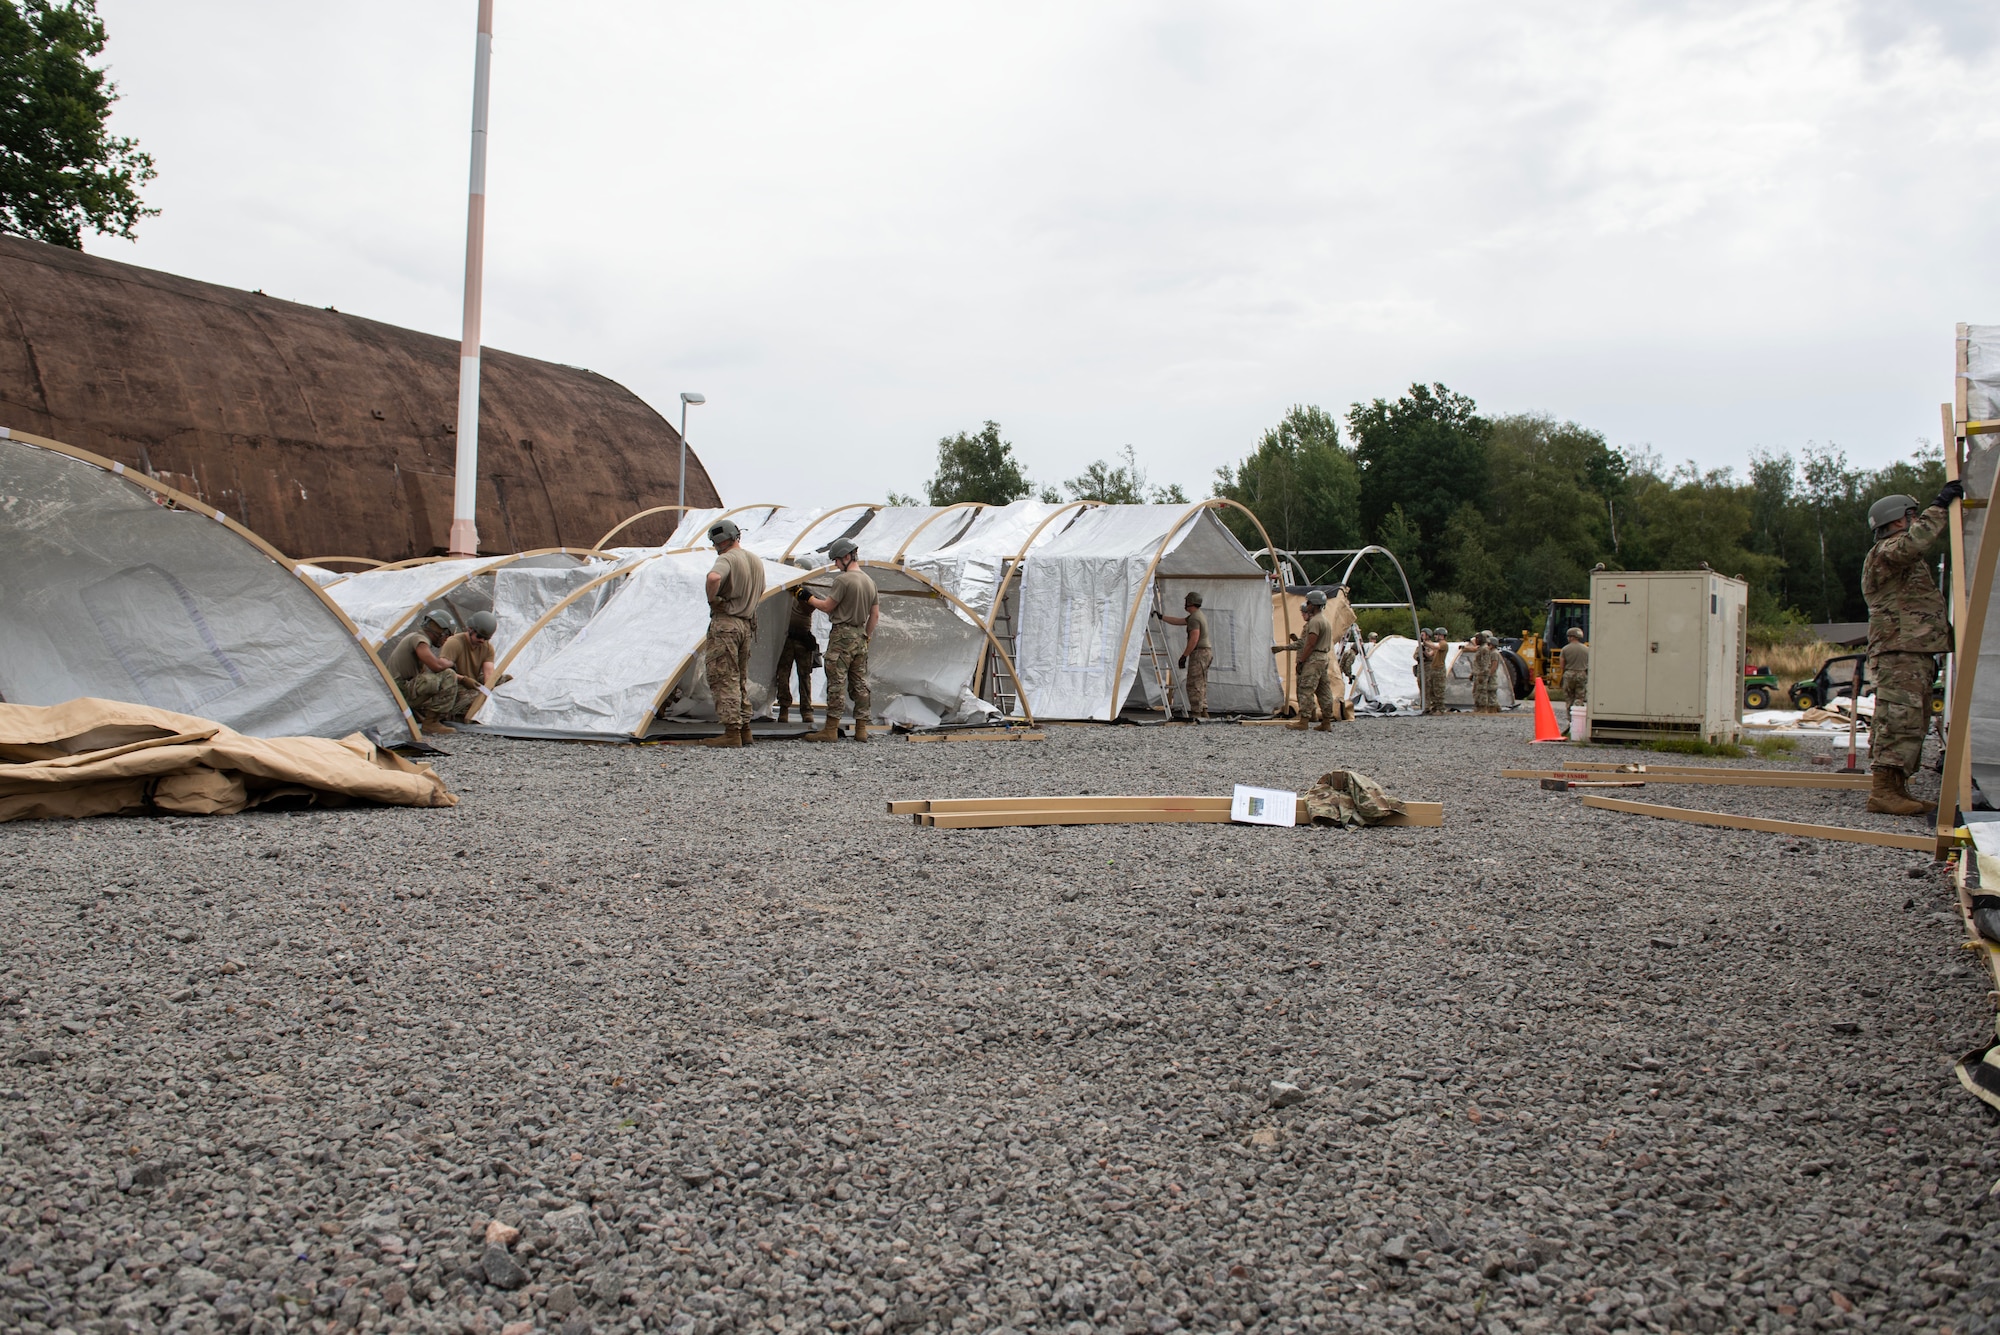 Multiple Airmen sent up tents